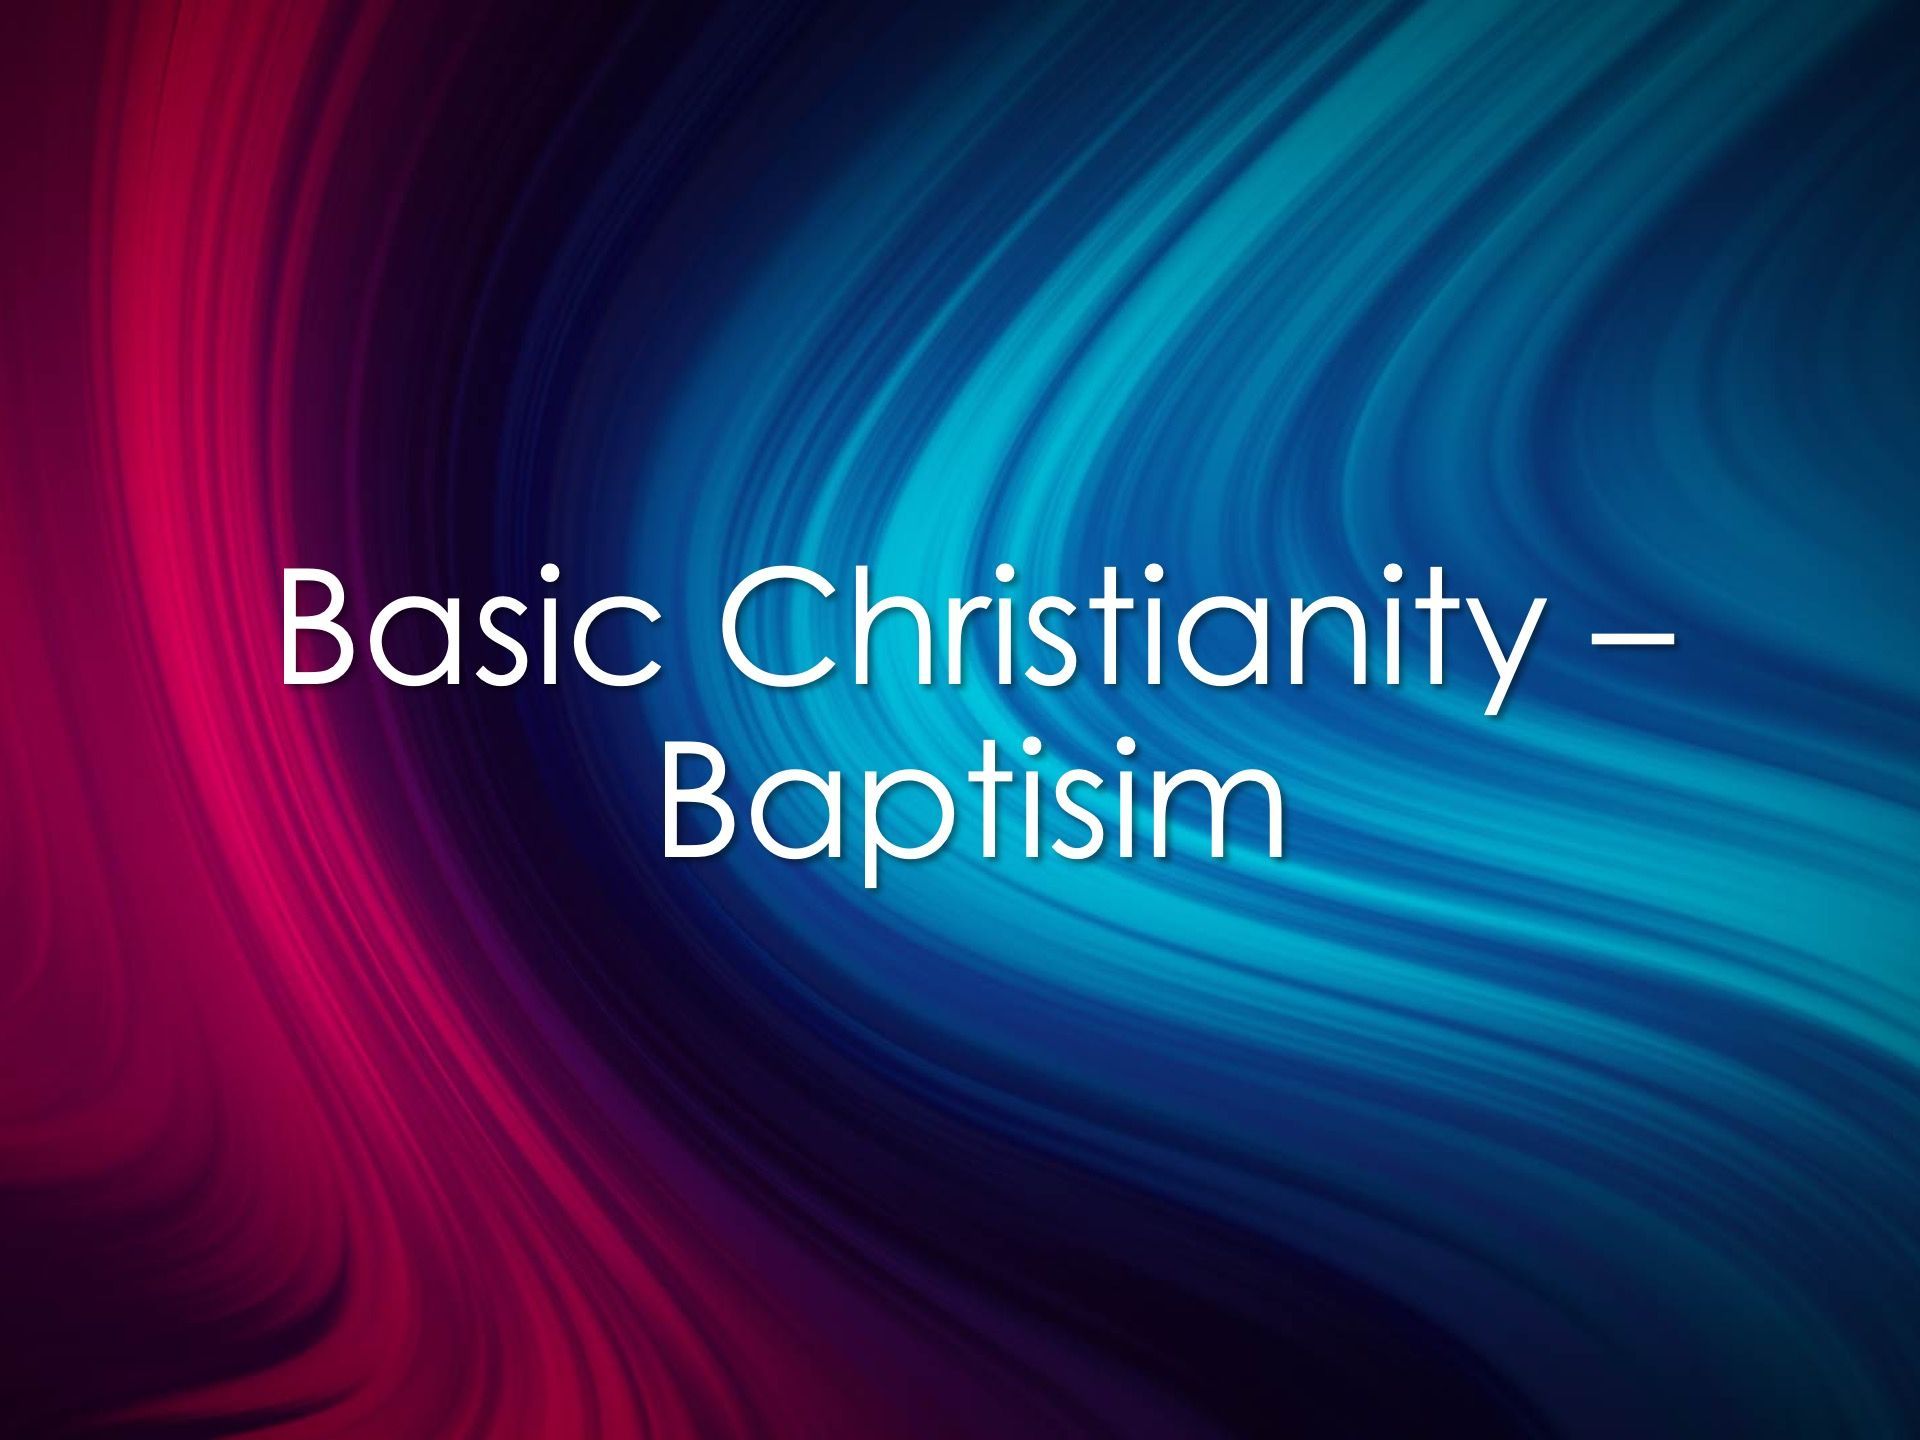 Basic Christianity—Baptism